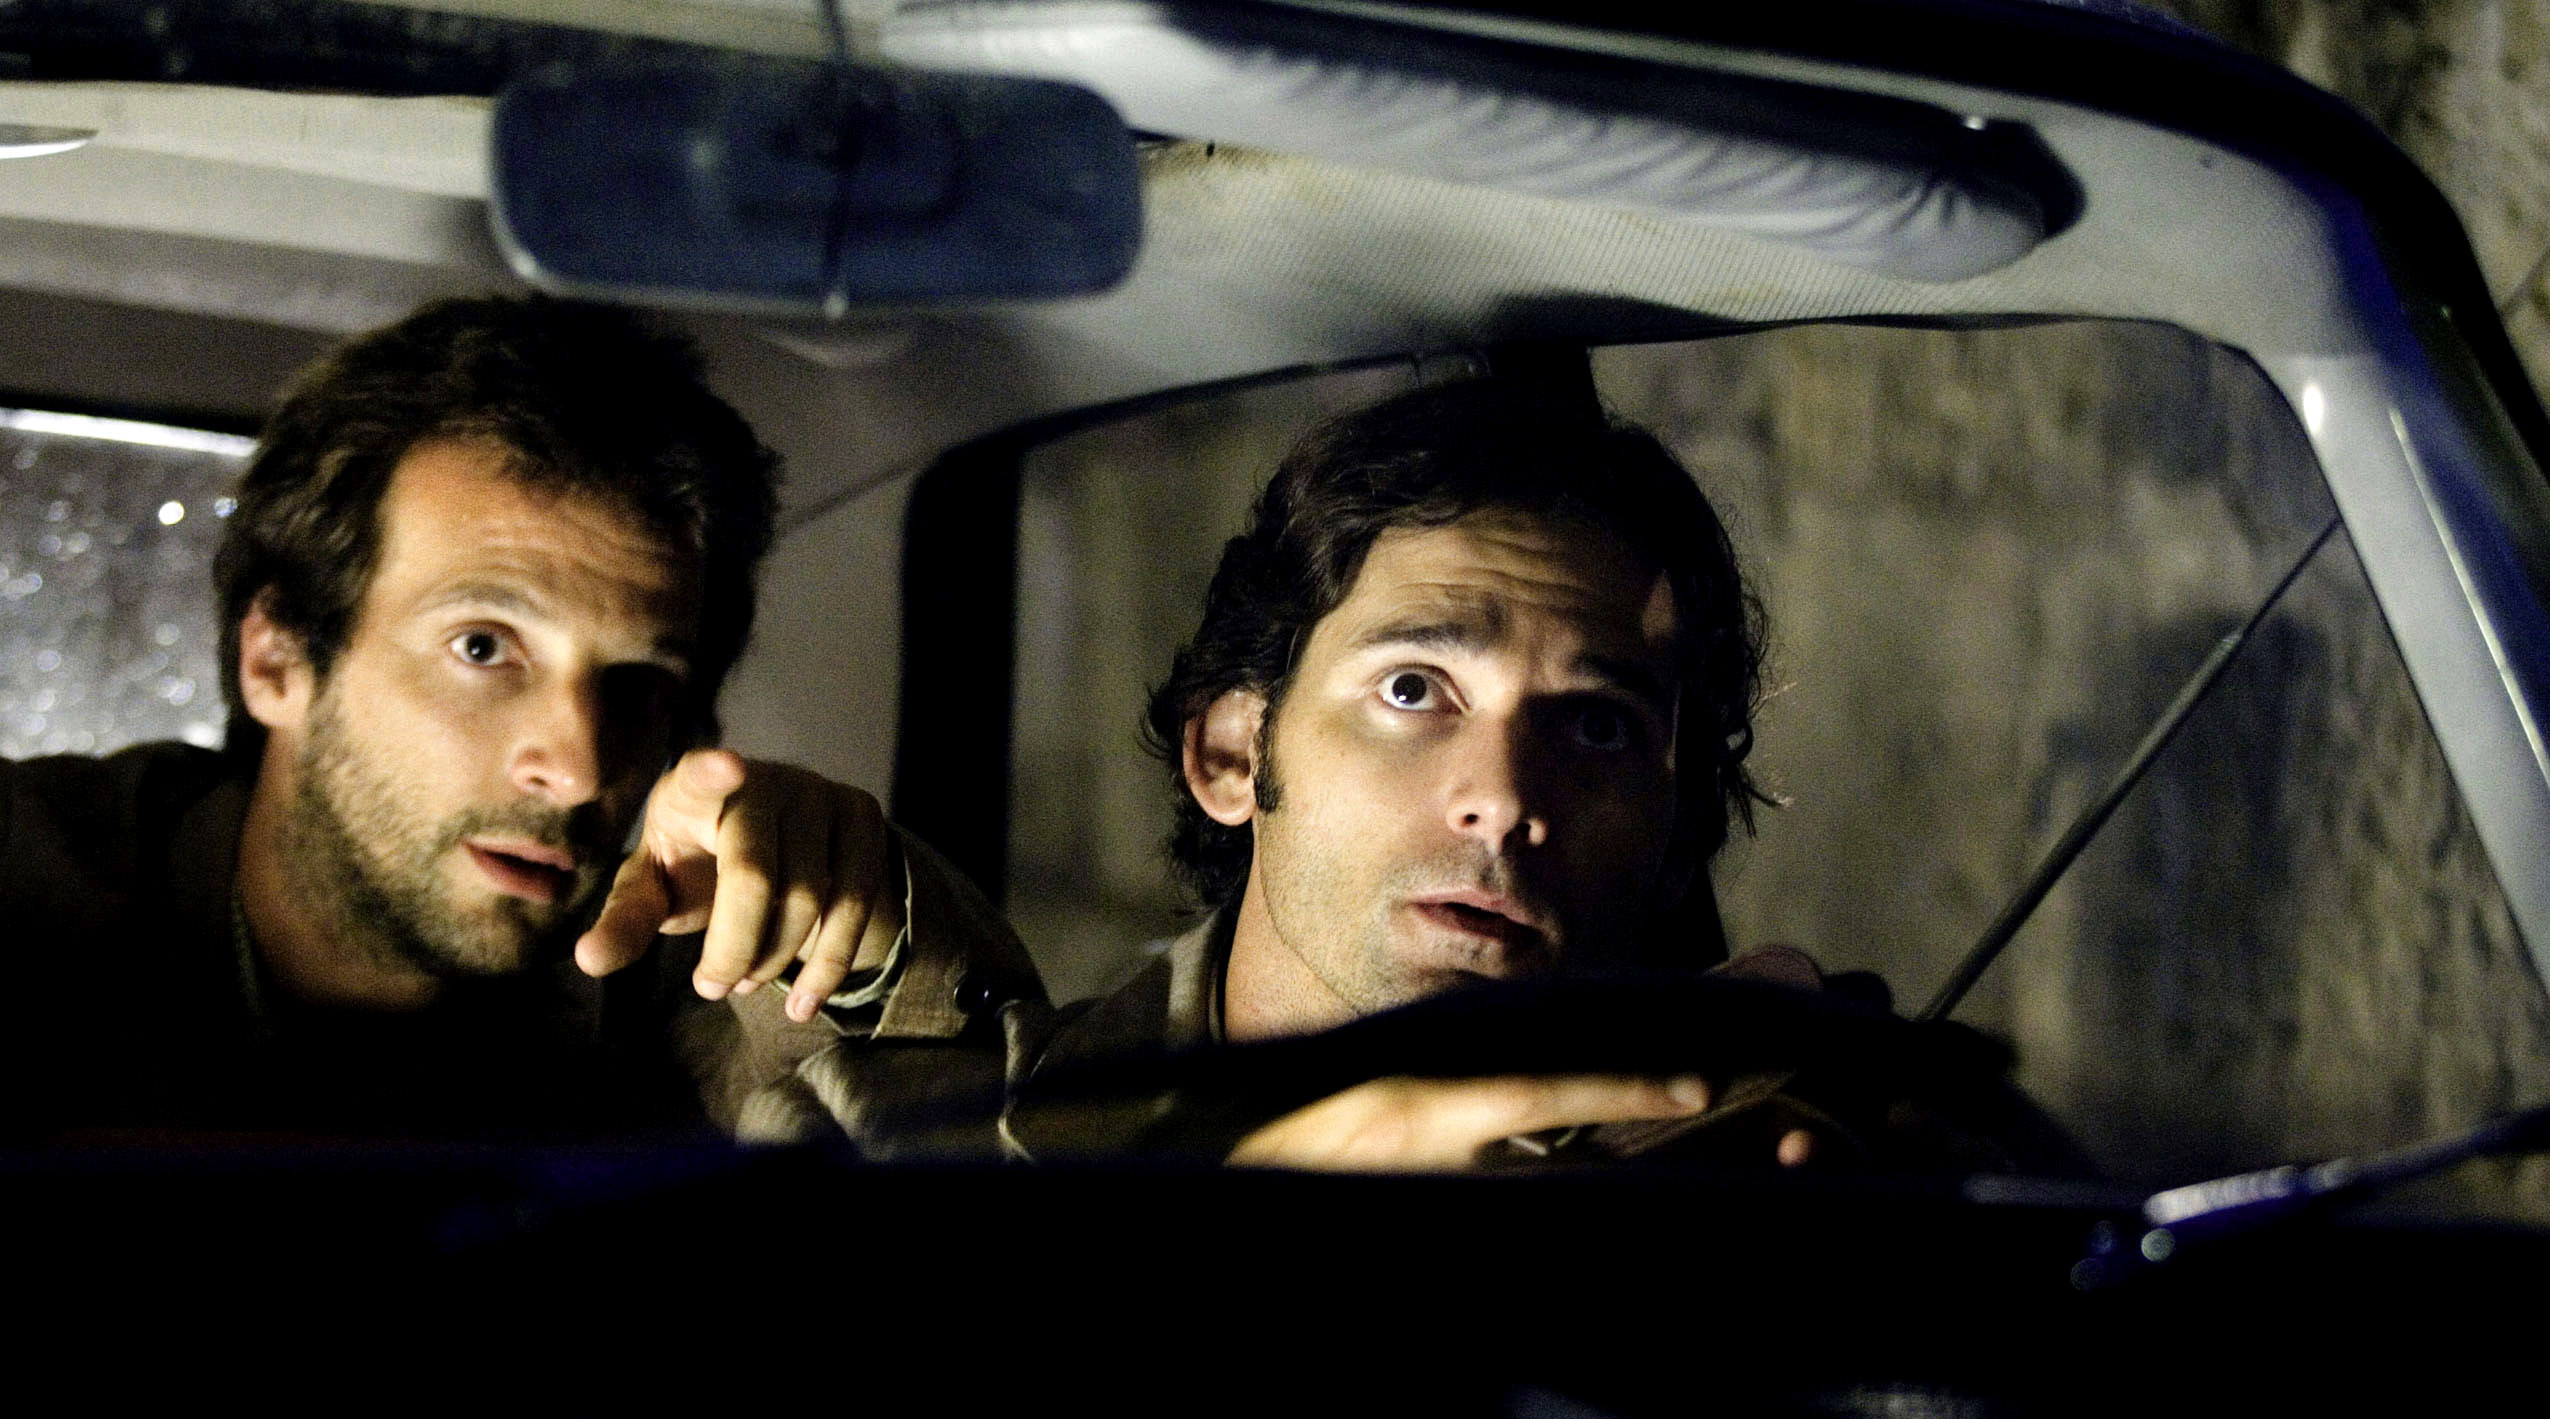 Mathieu Kassovitz, Eric Bana in a car at night